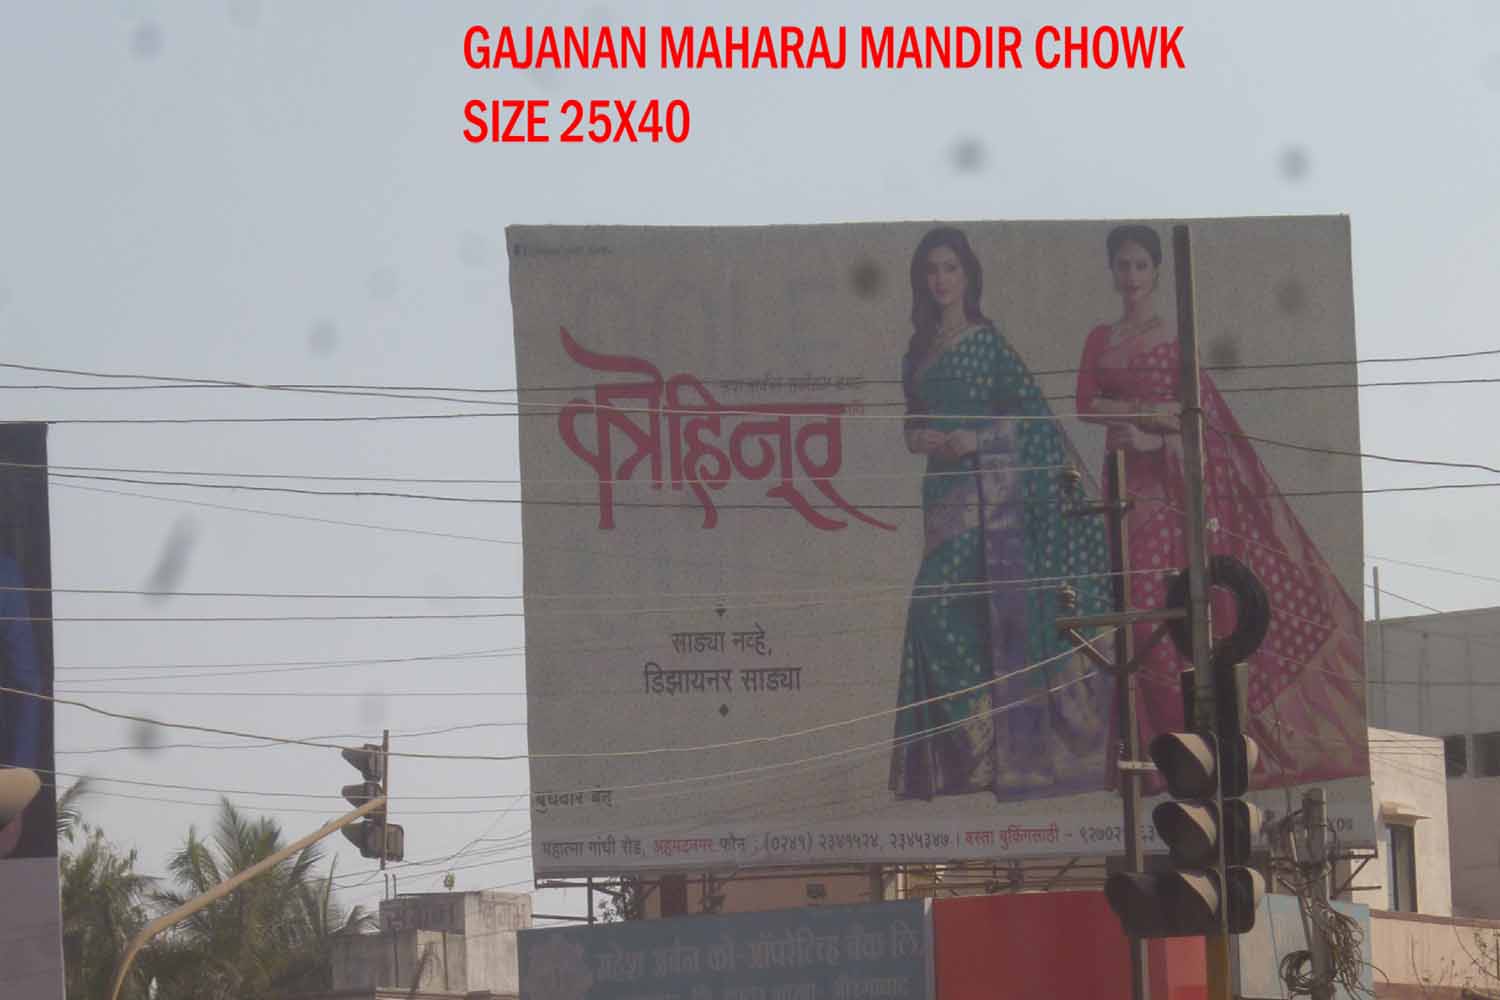 Gajanan Maharaj Mandir Chowk, Aurangabad